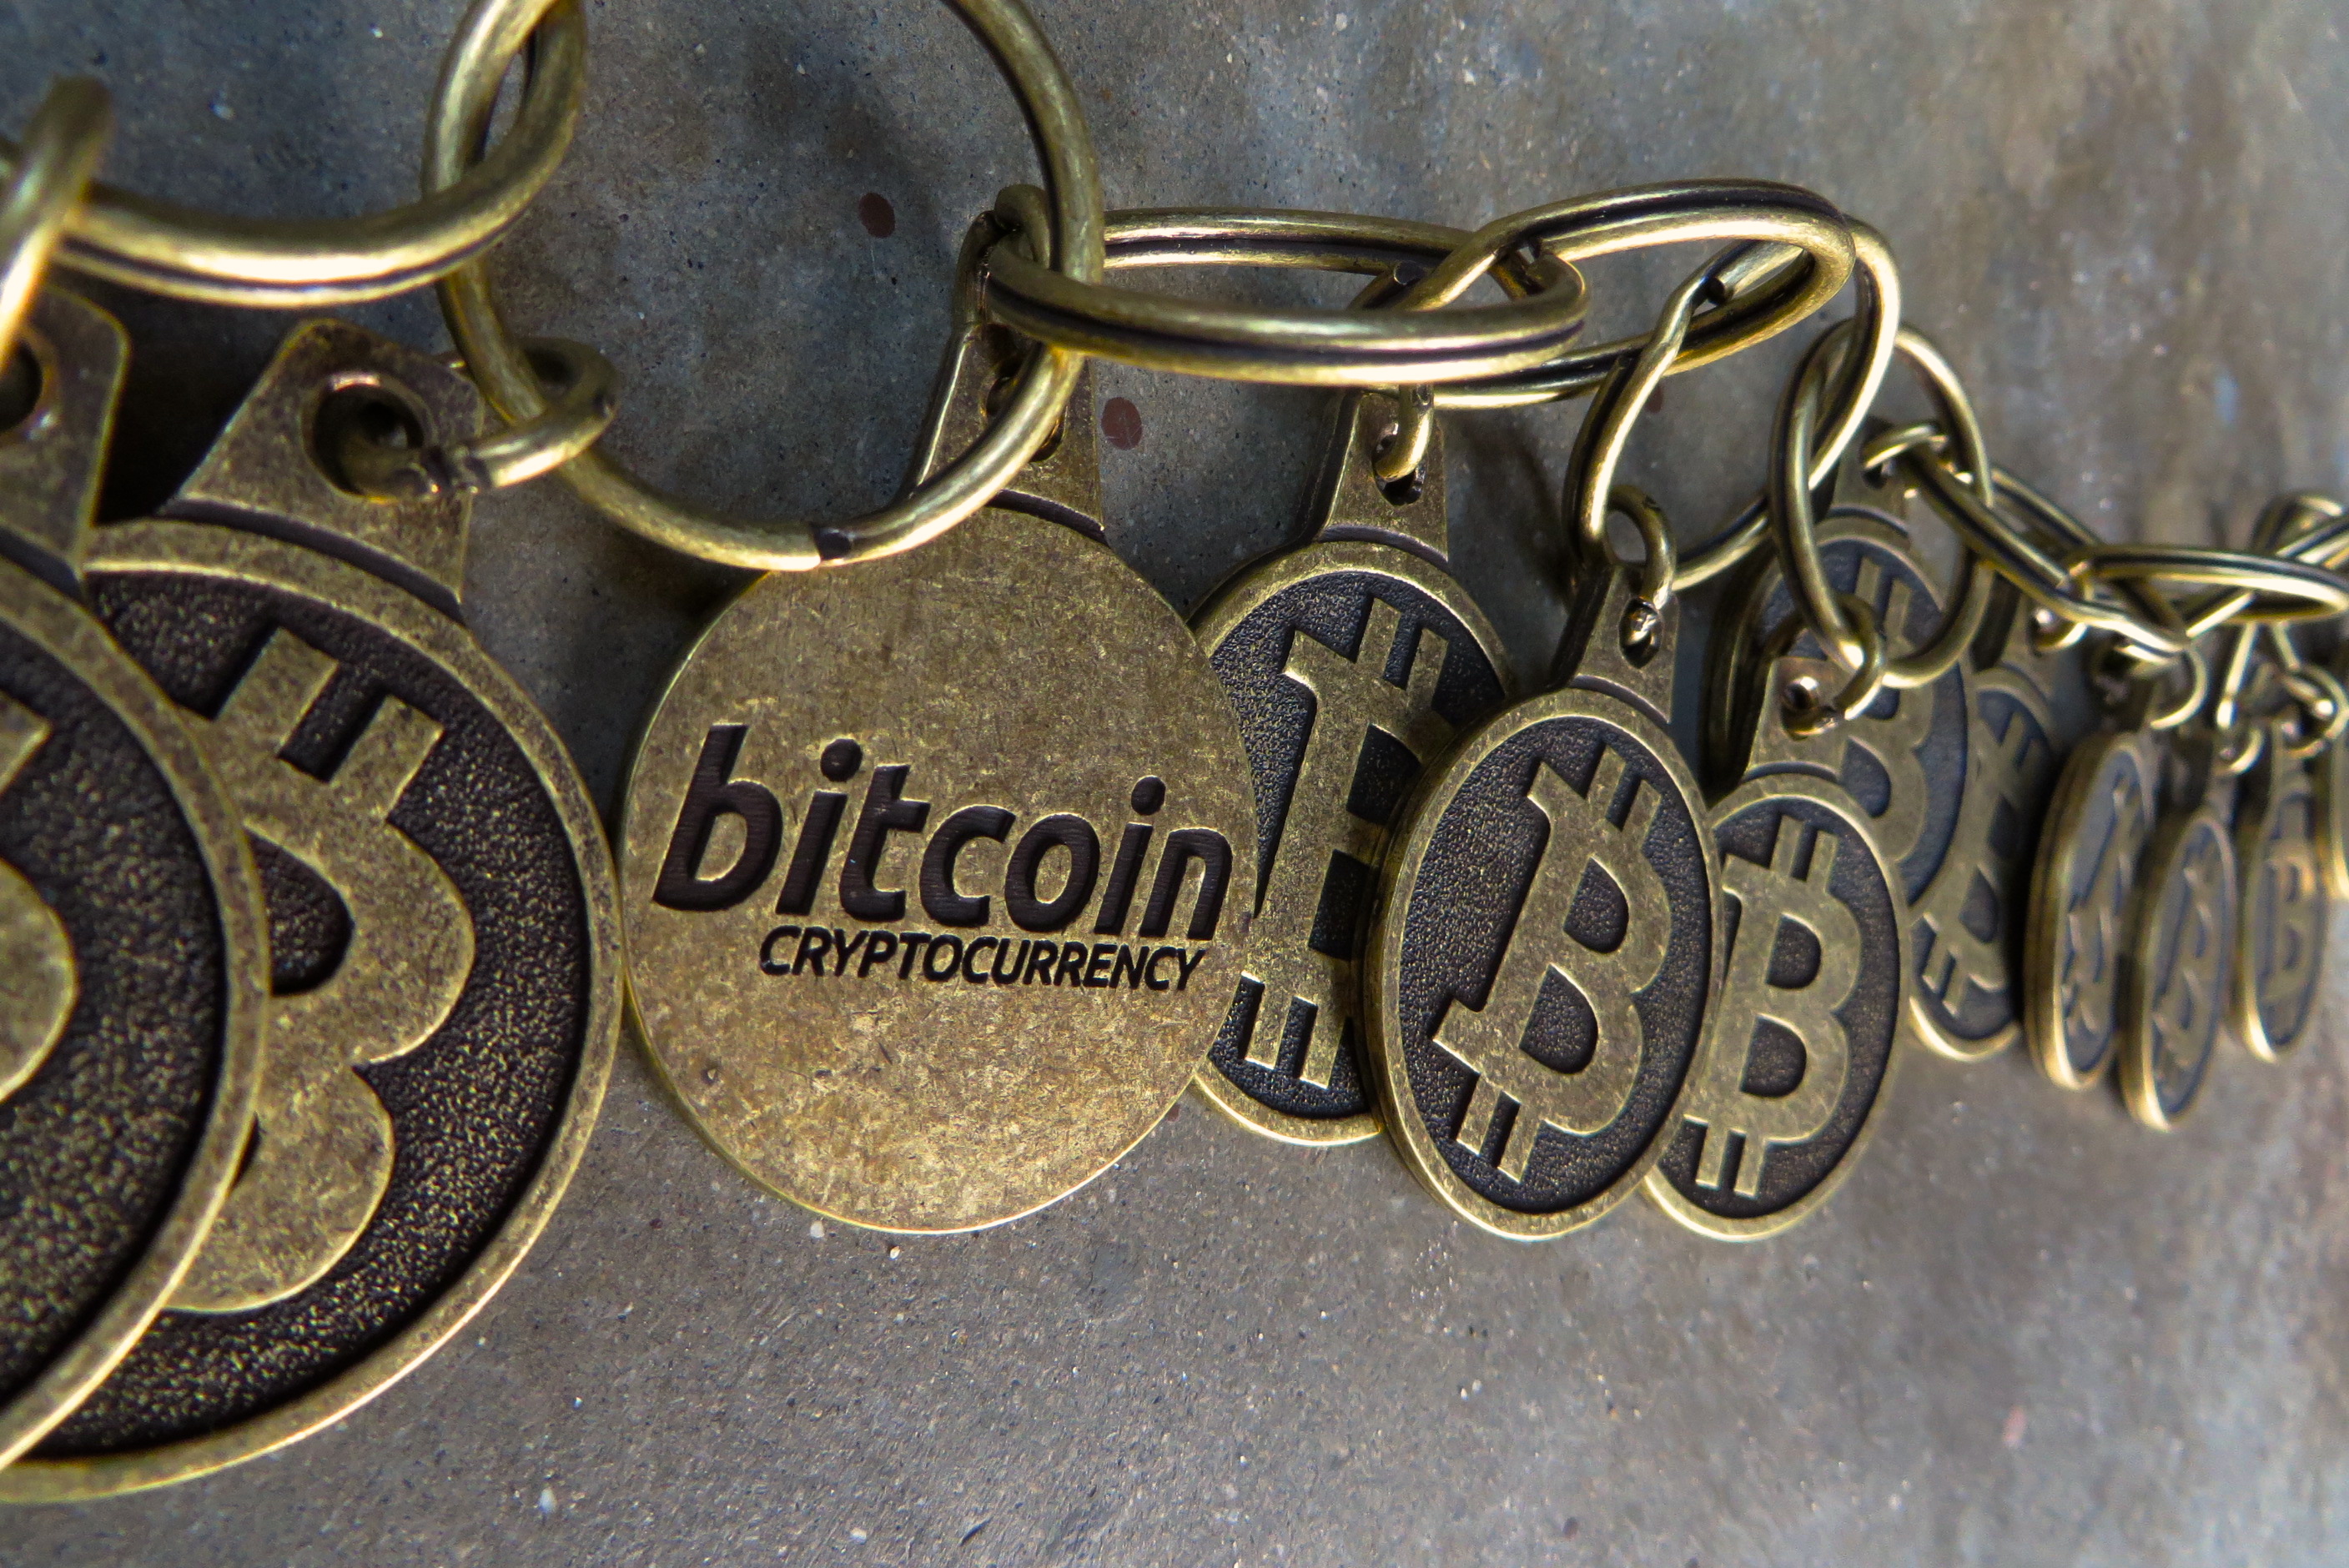 cadena de cadenas bitcoin, simboliza la cadena de bloques o blockchain de Bitcoin. https://flic.kr/p/oVGdq9